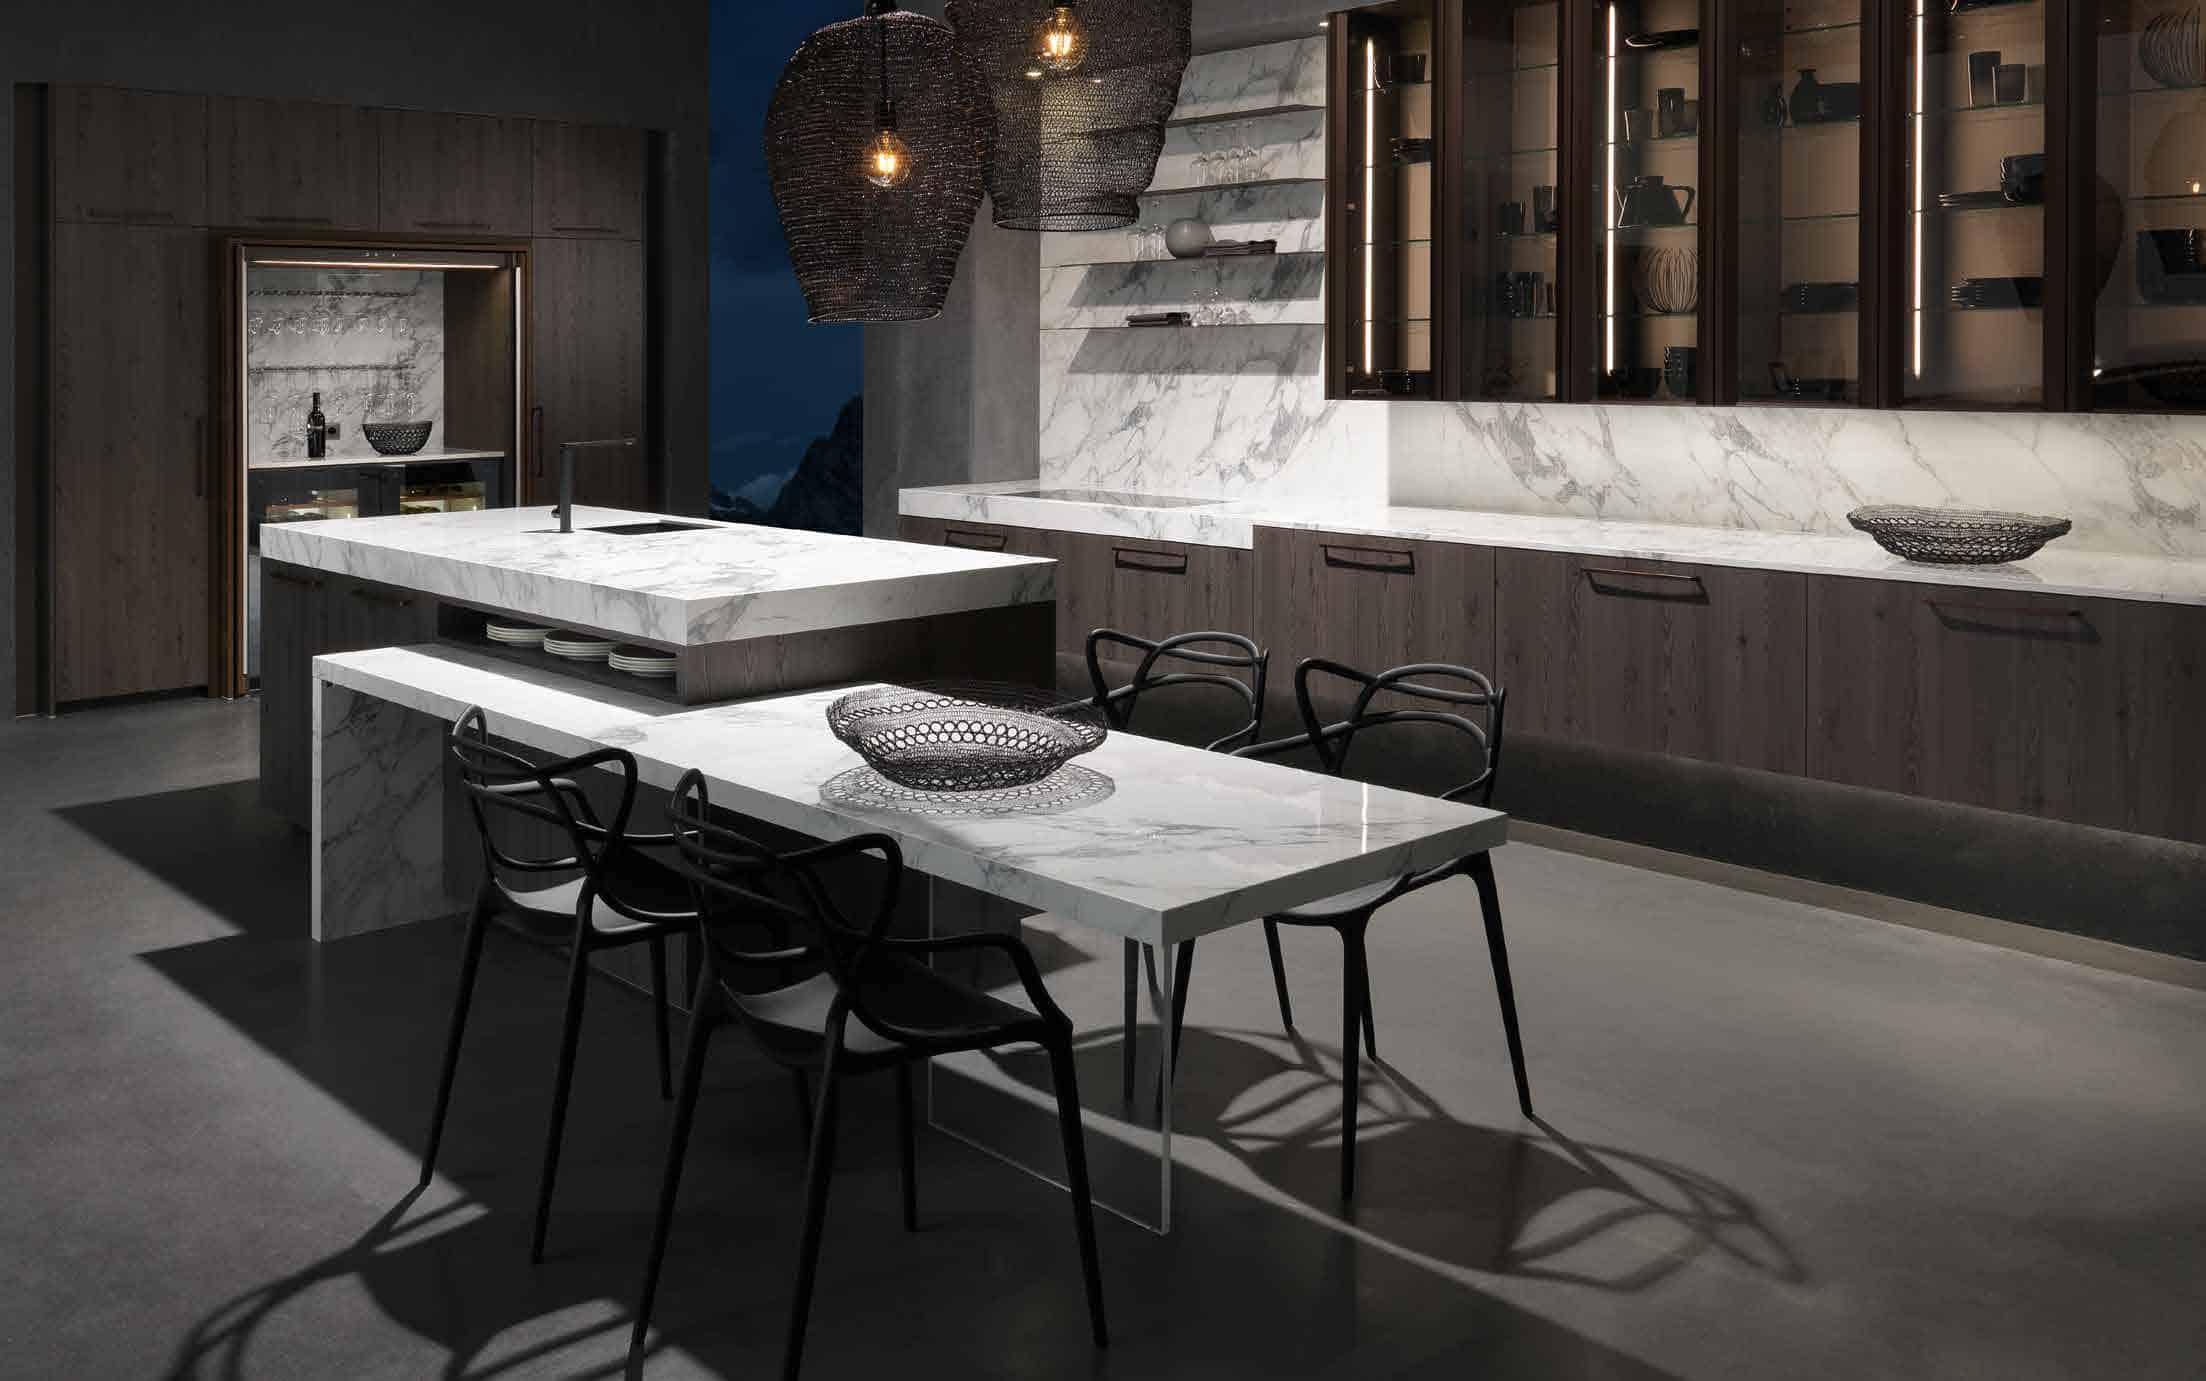 Küchenstudio Eine moderne Küche mit Marmoroberflächen und Stühlen.